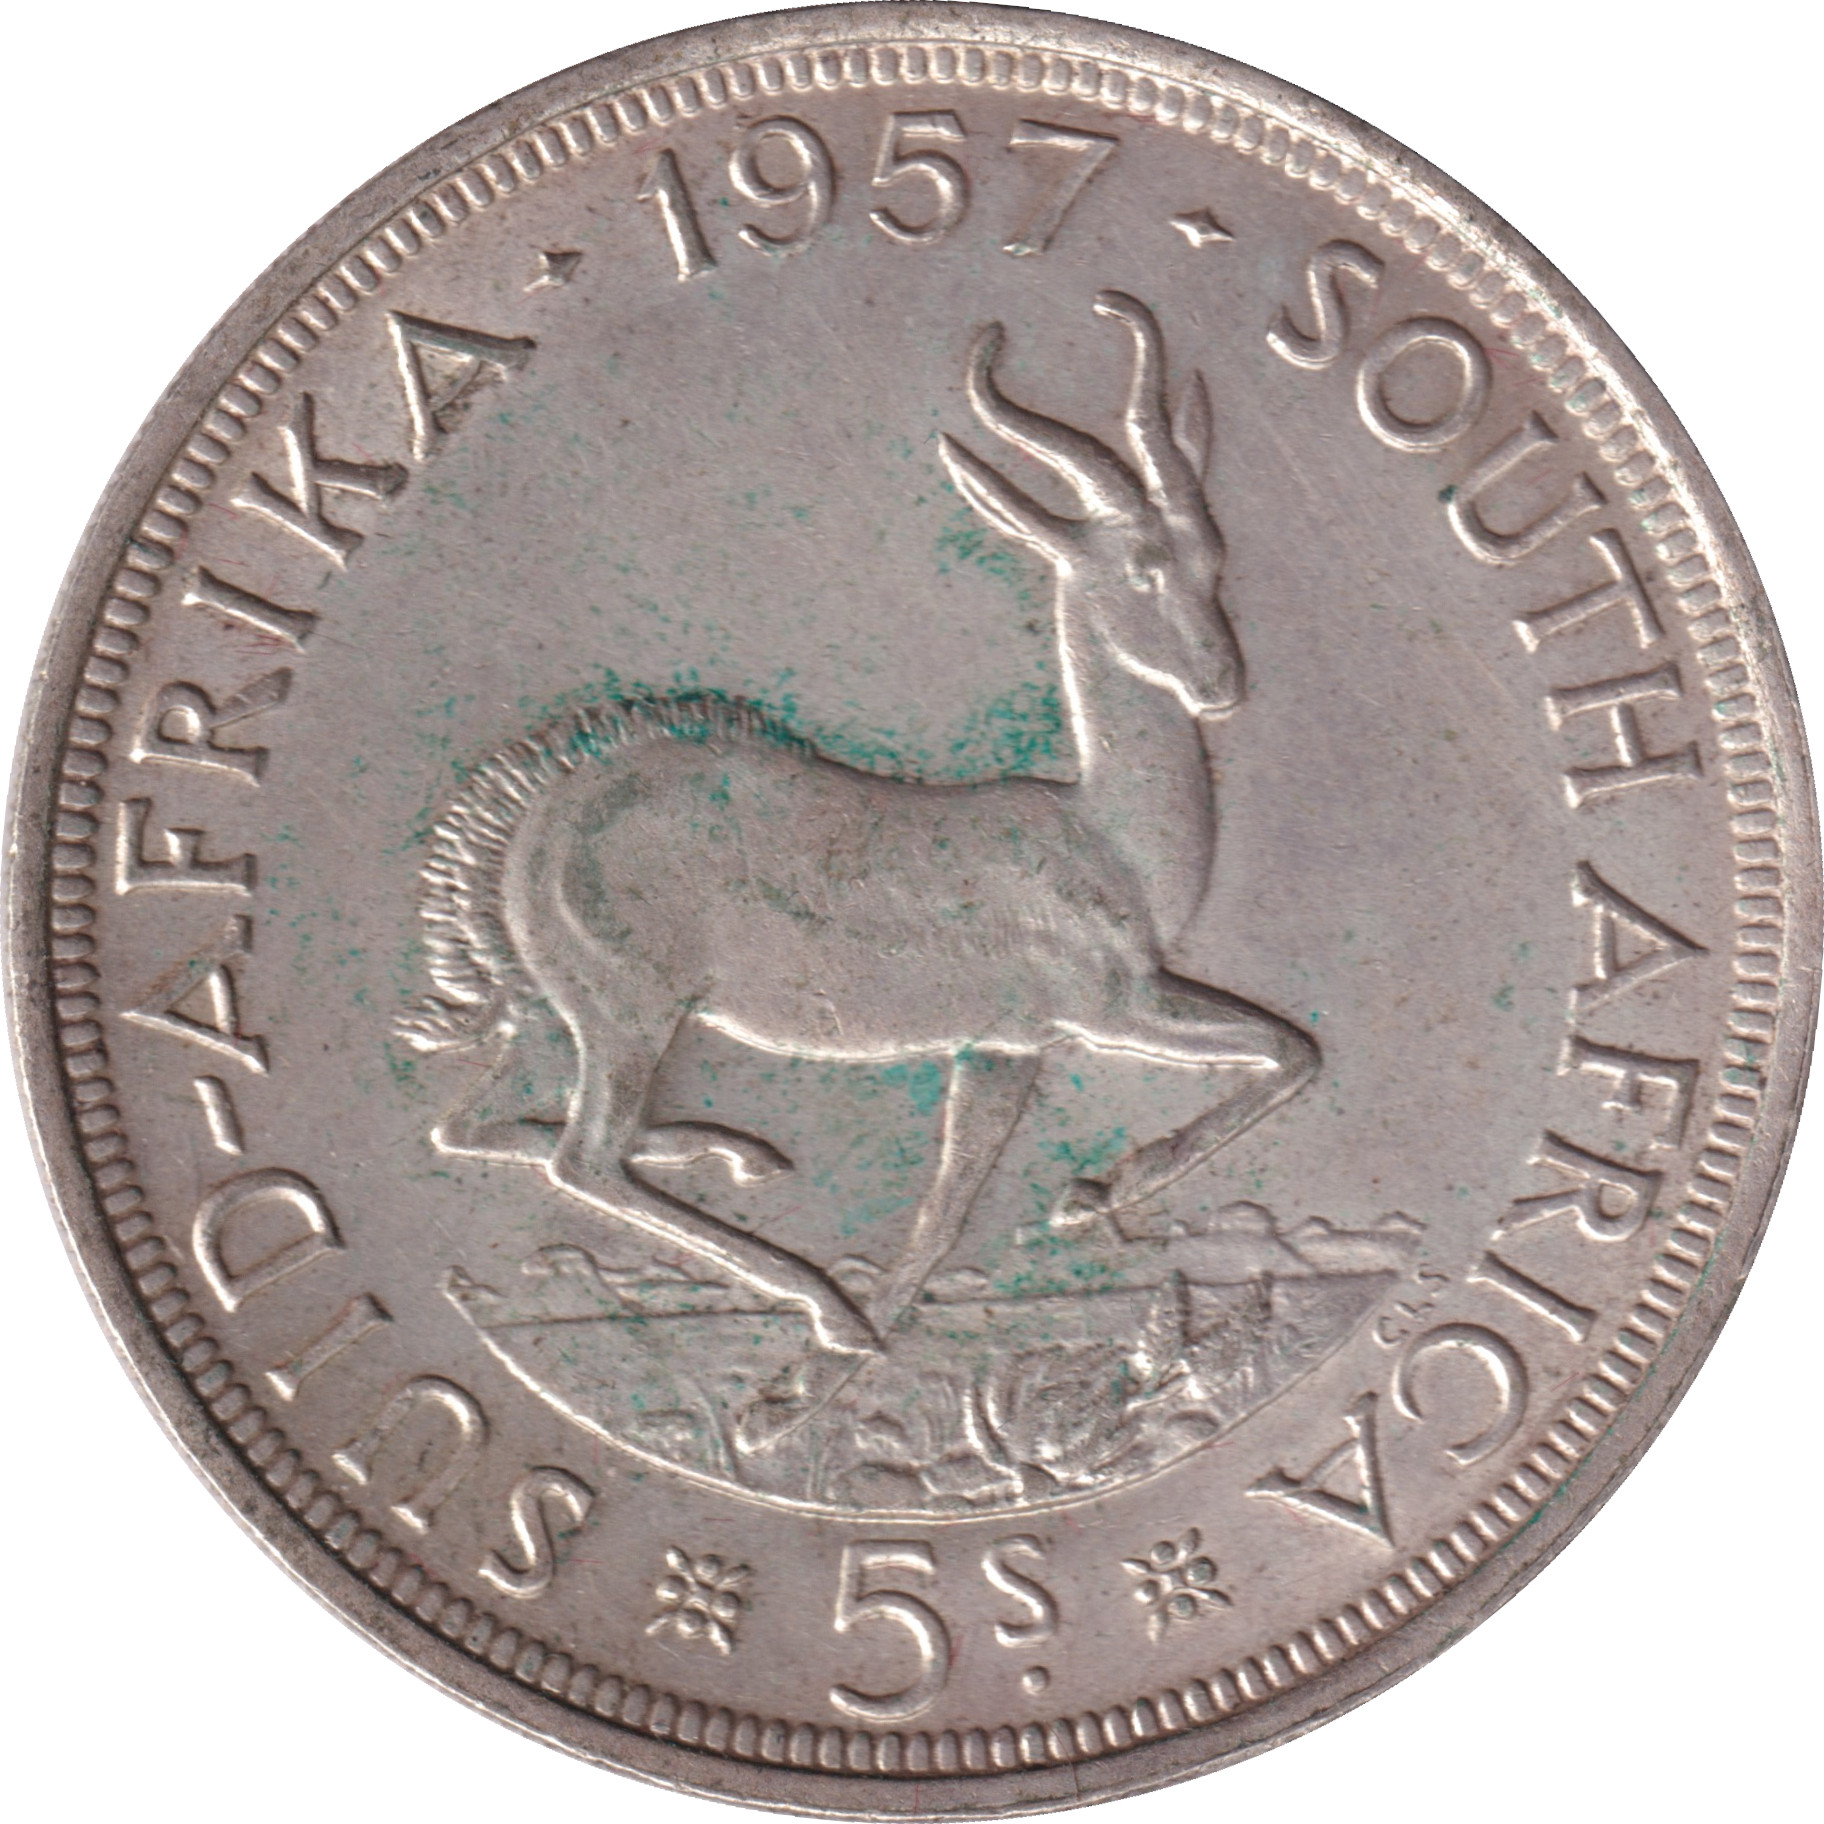 5 shillings - Elizabeth II